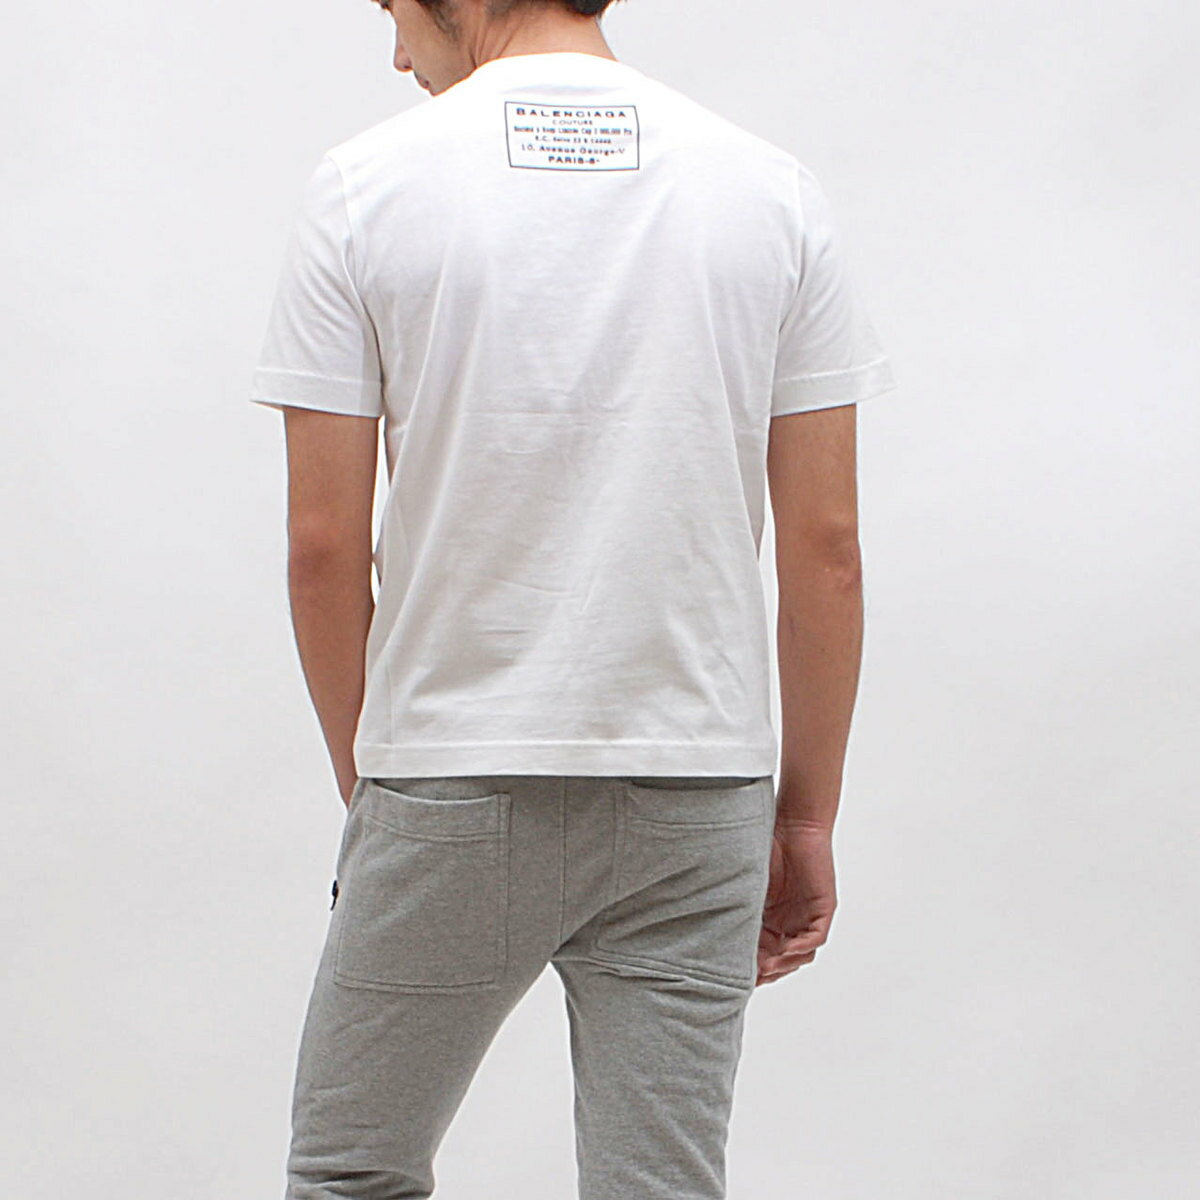 BALENCIAGA バレンシアガ 半袖 Tシャツ カットソー メンズ レディース ロゴ クルーネック 白 黒 ユニセックス シンプル